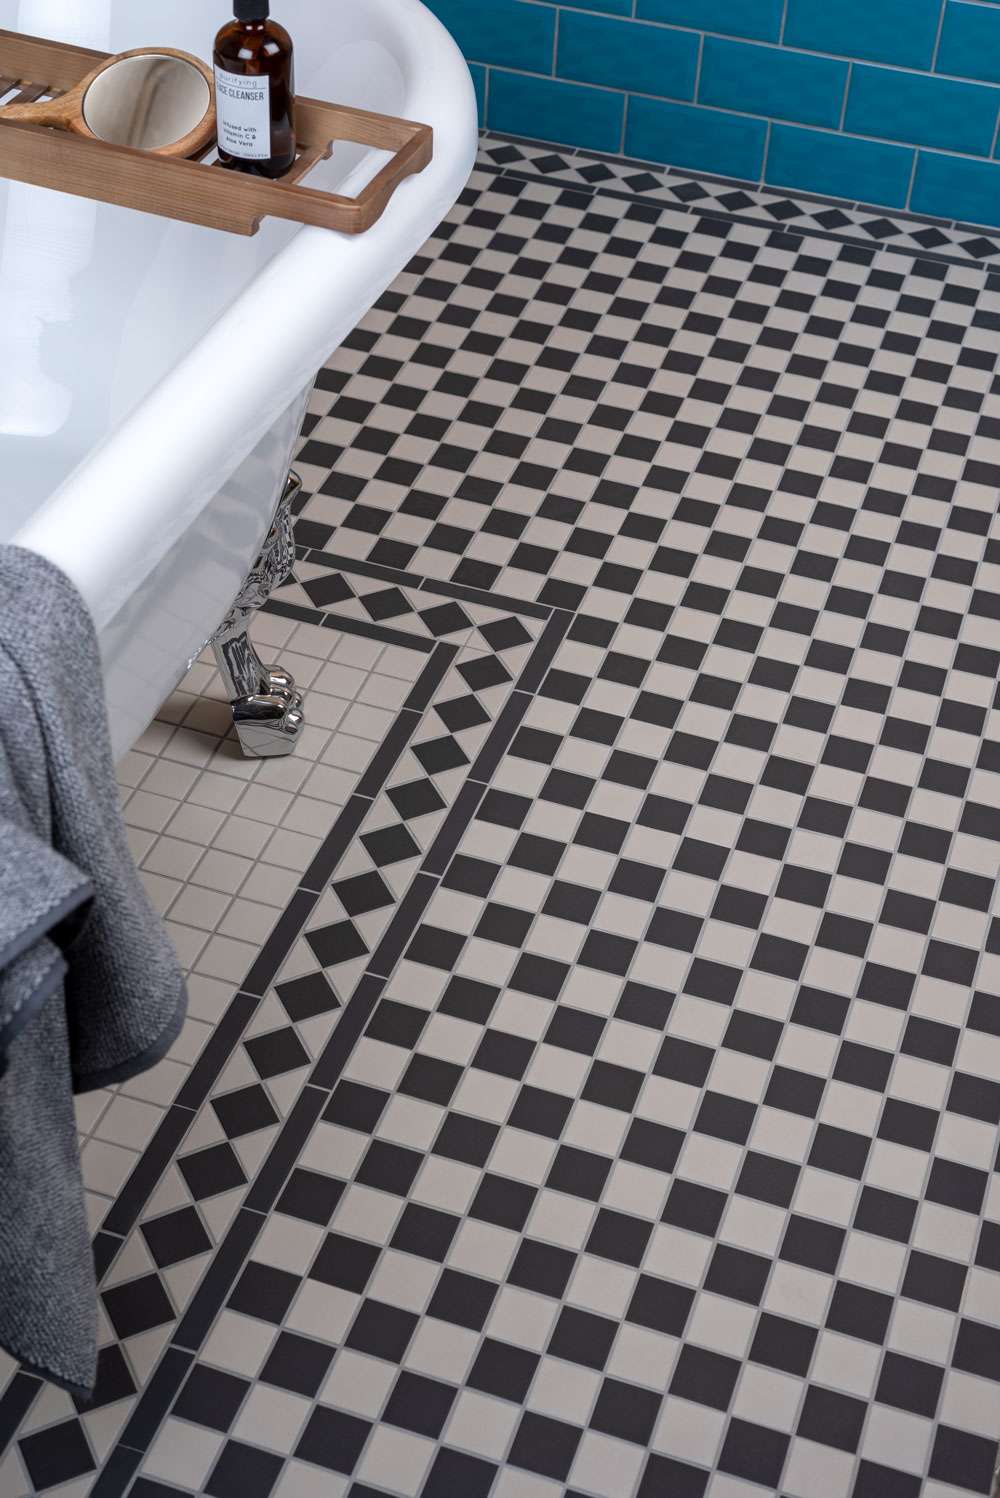 Churchill Mosaic Tiles: Create A Period Look